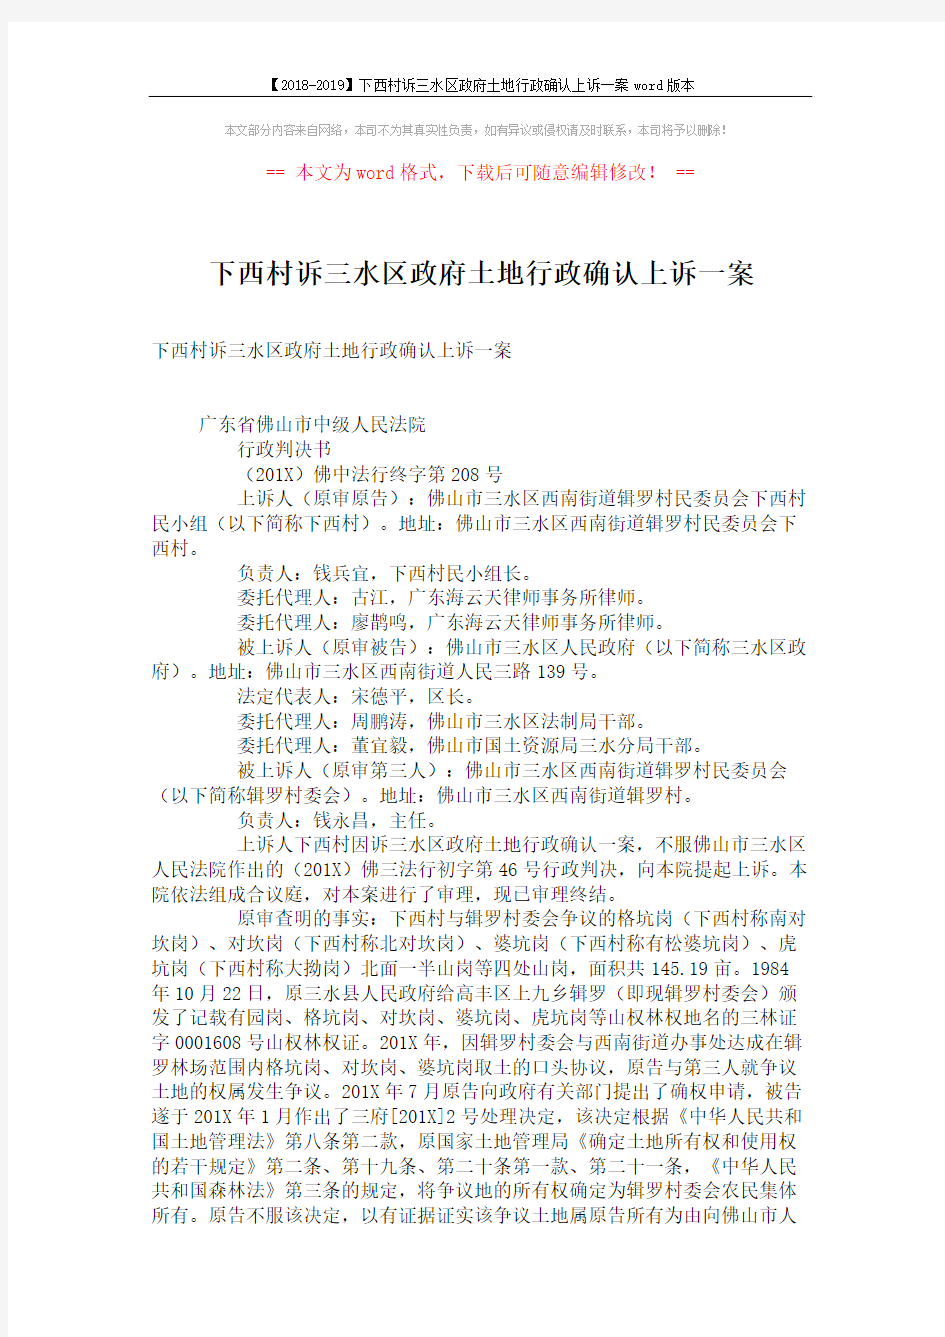 【2018-2019】下西村诉三水区政府土地行政确认上诉一案word版本 (5页)